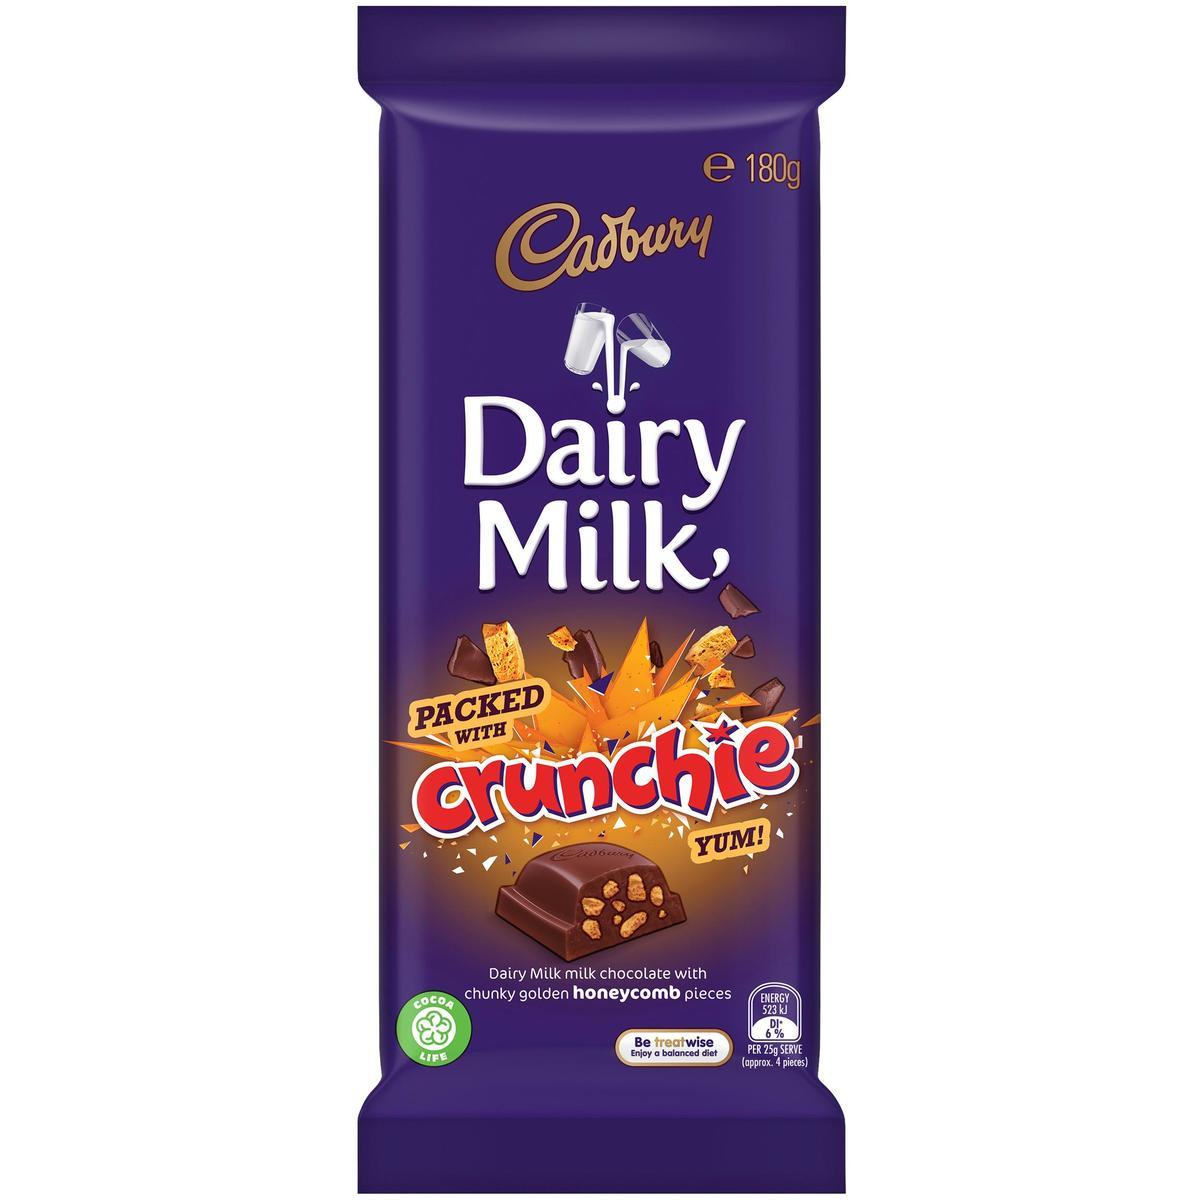 Cadbury Dairy Milk Crunchie Chocolate Block 180g